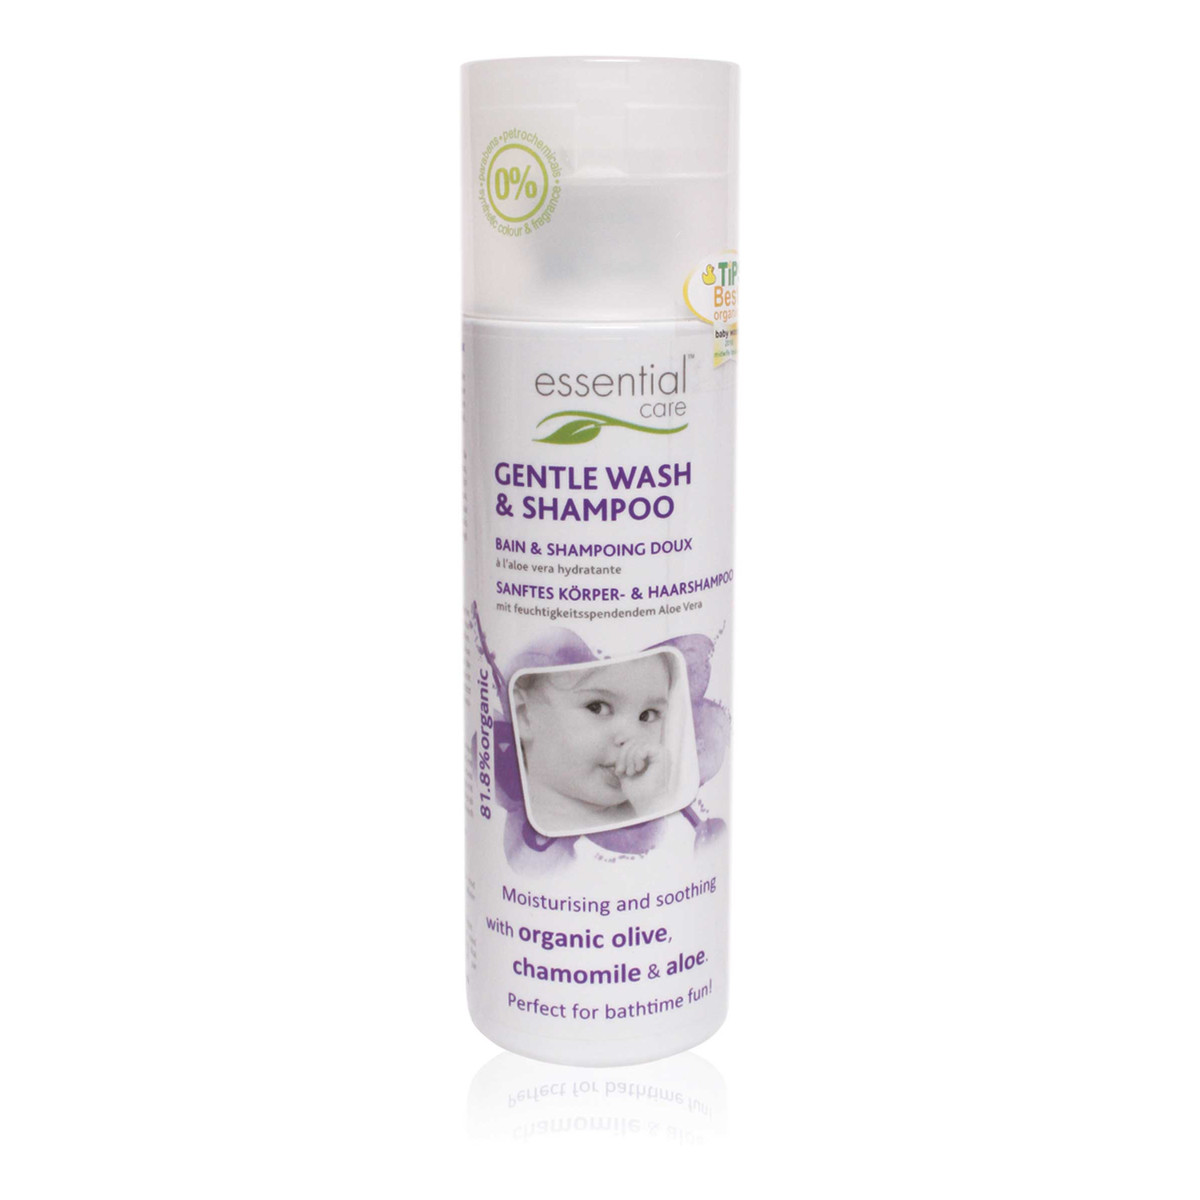 Essential Care Delikatny płyn do mycia ciała i włosów dla niemowląt 50 ml (tubka) 50ml